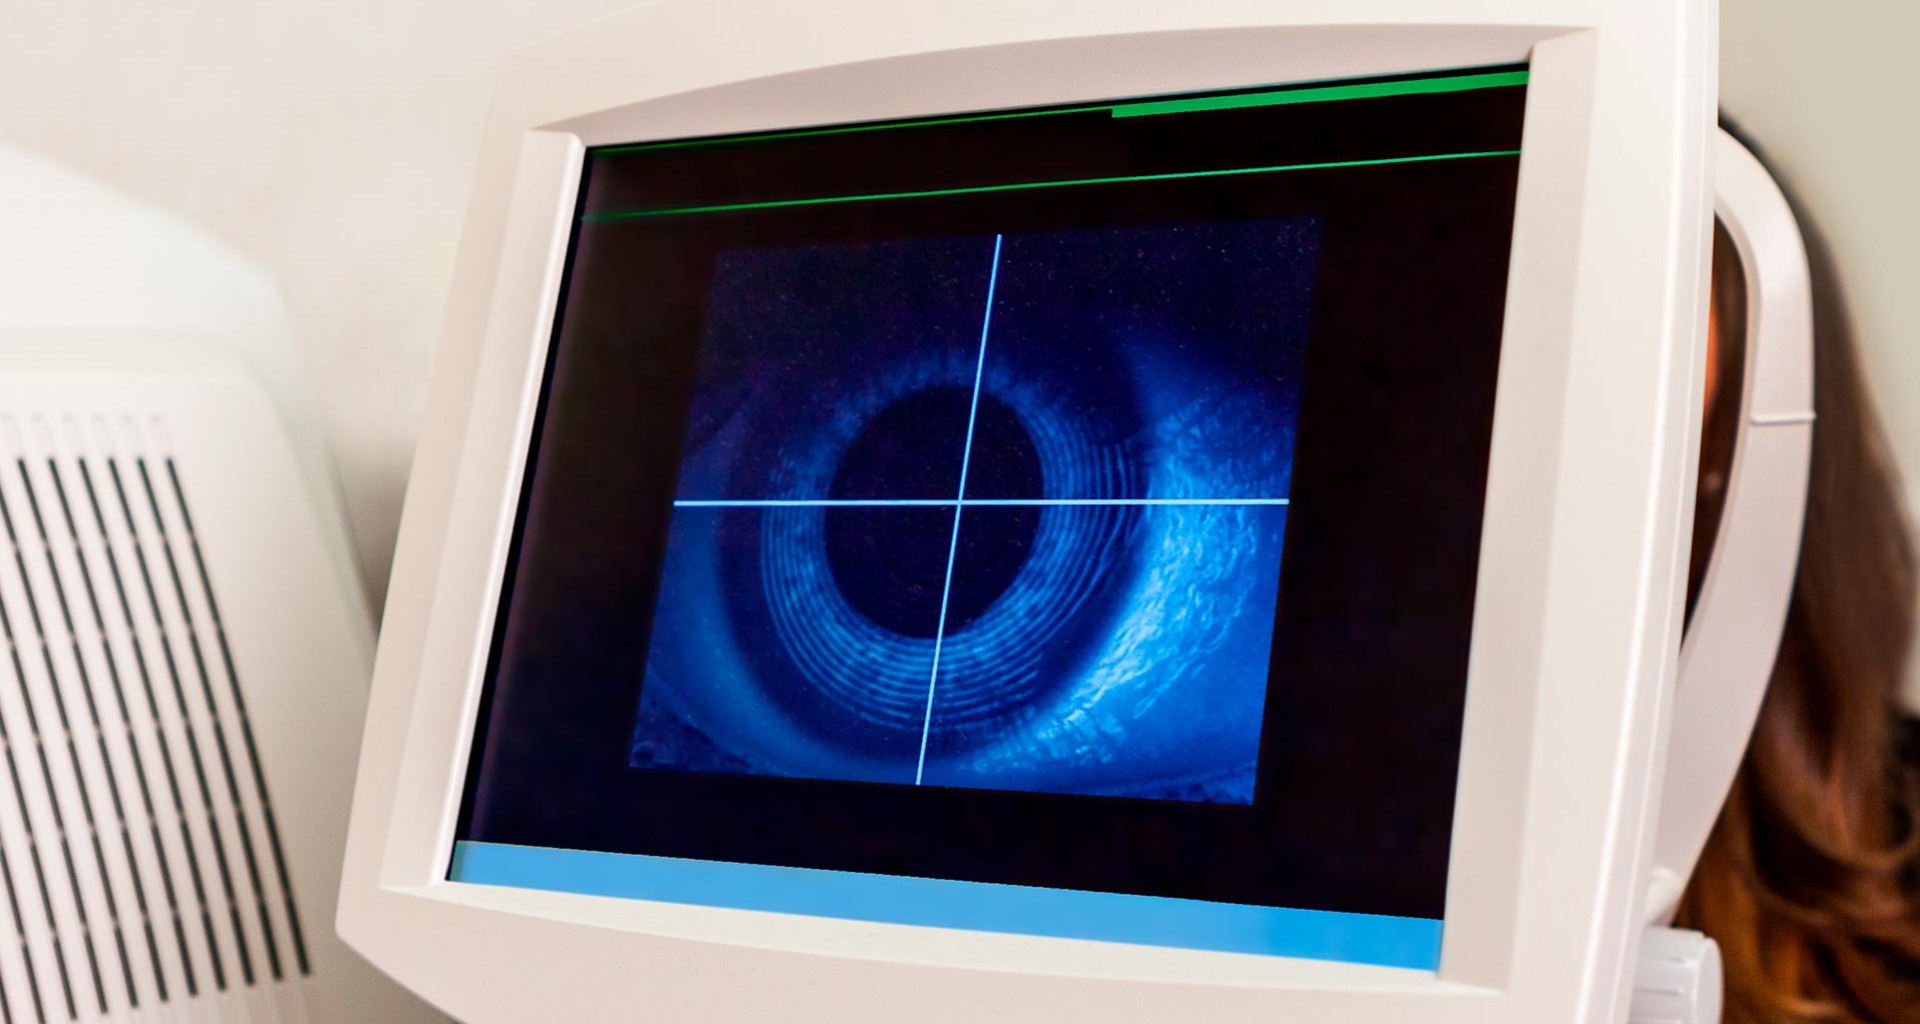 Diagnostican retinopatías diabéticas con Inteligencia Artificial con imágenes del fondo del ojo.